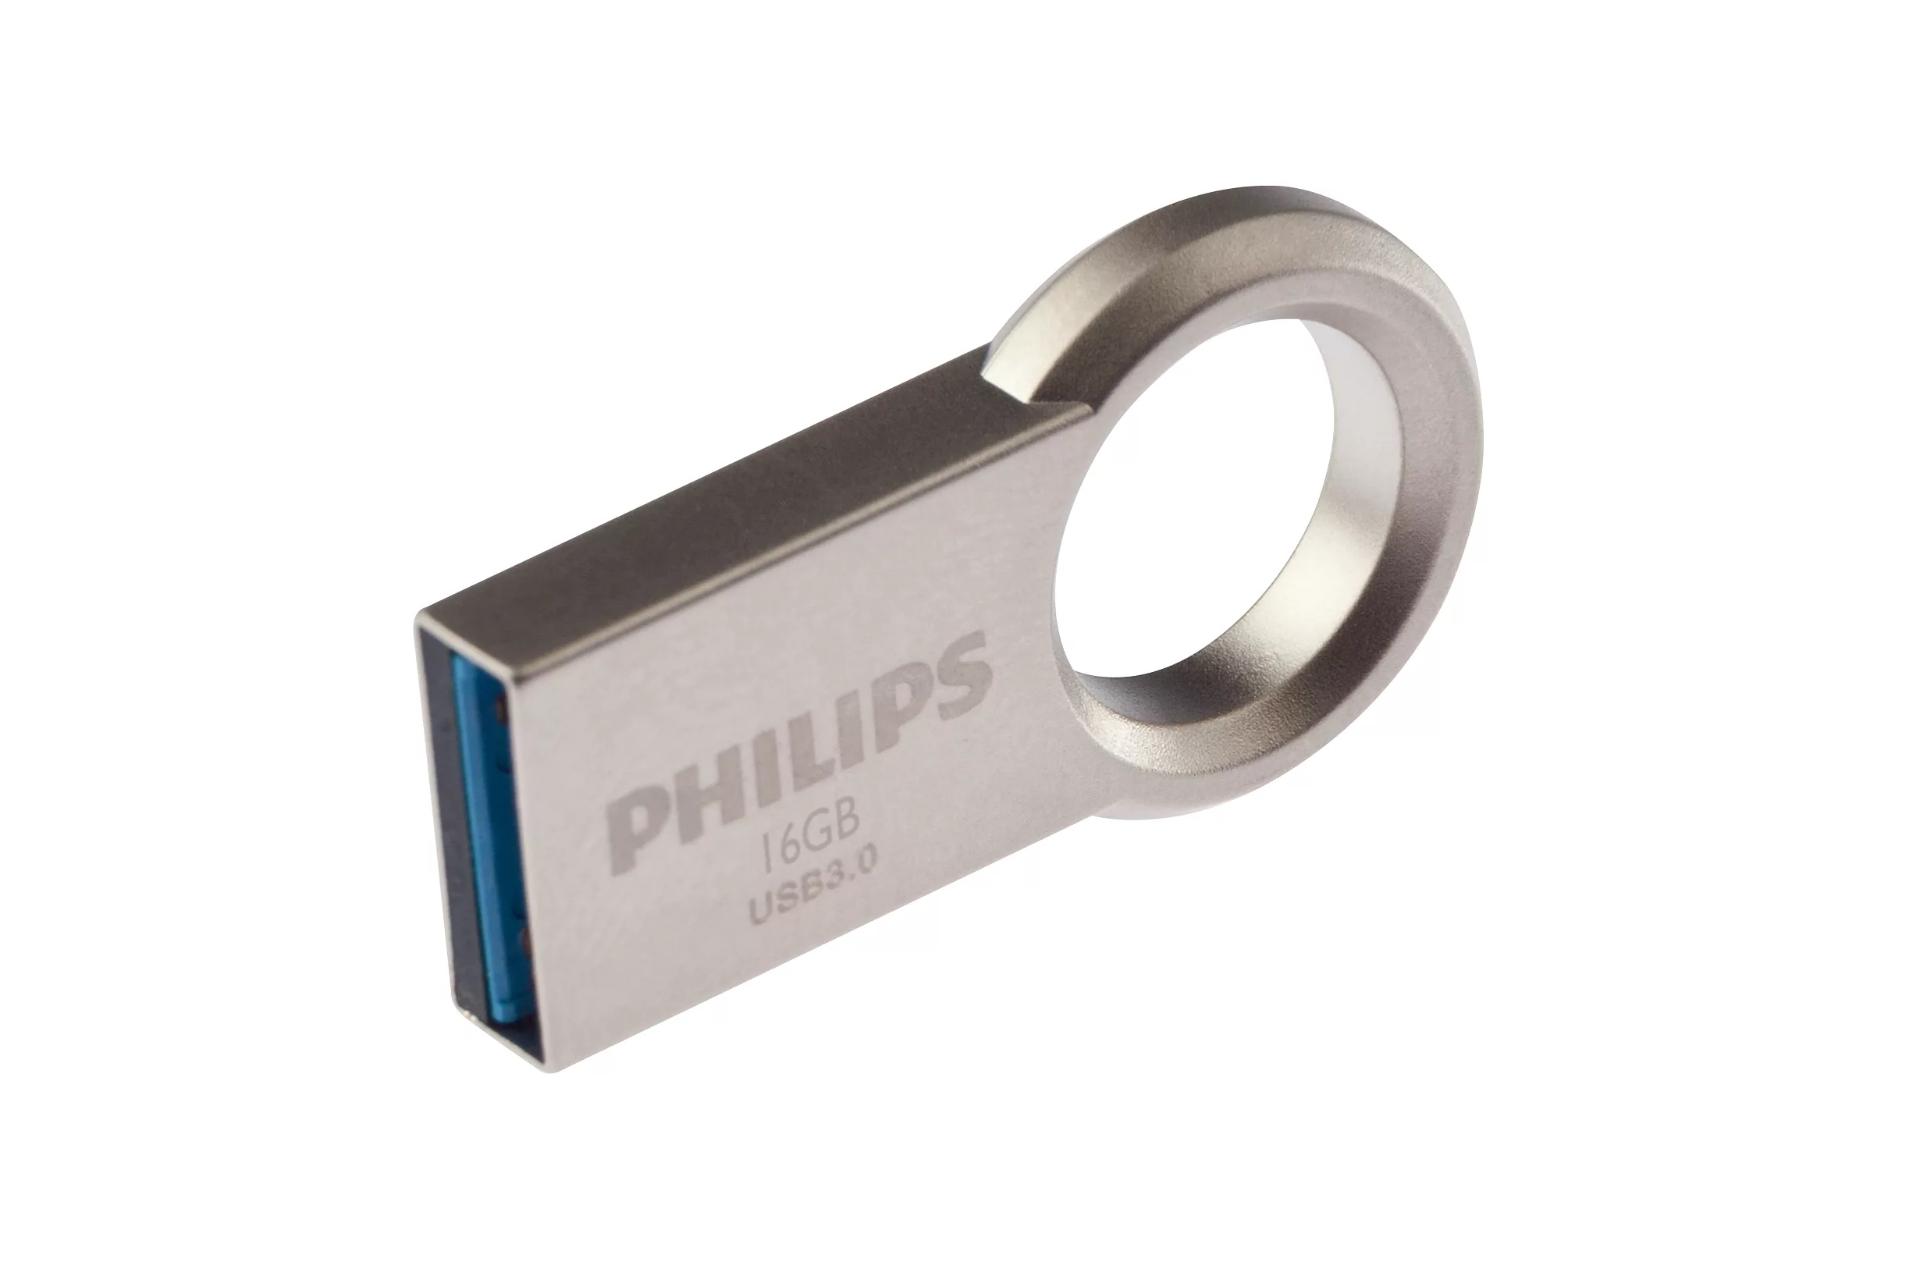 نمای جانبی Philips Circle 16GB / فلش مموری فیلیپس مدل Circle ظرفیت 16 گیگابایت